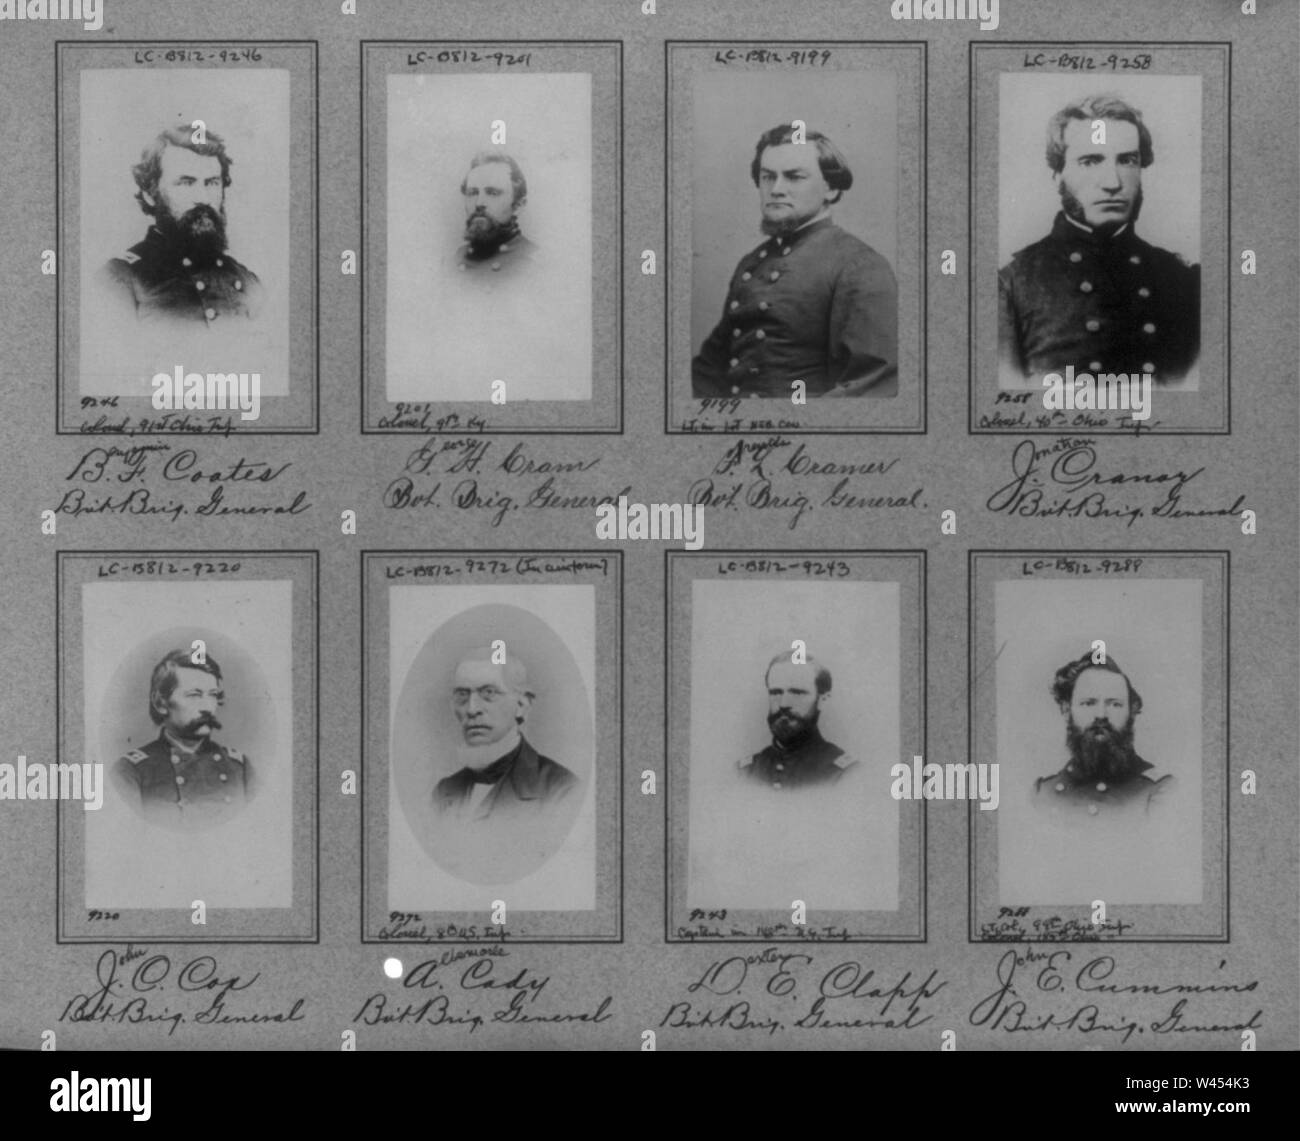 Composite of 8 bust photos of Brig. Generals Benjamin F. Coates, George H. Cram, Francis L. Cramer, Jonathan Cranor, John C. Cox, Albemarle Cady, Dexter E. Clapp, John E. Cummins Stock Photo